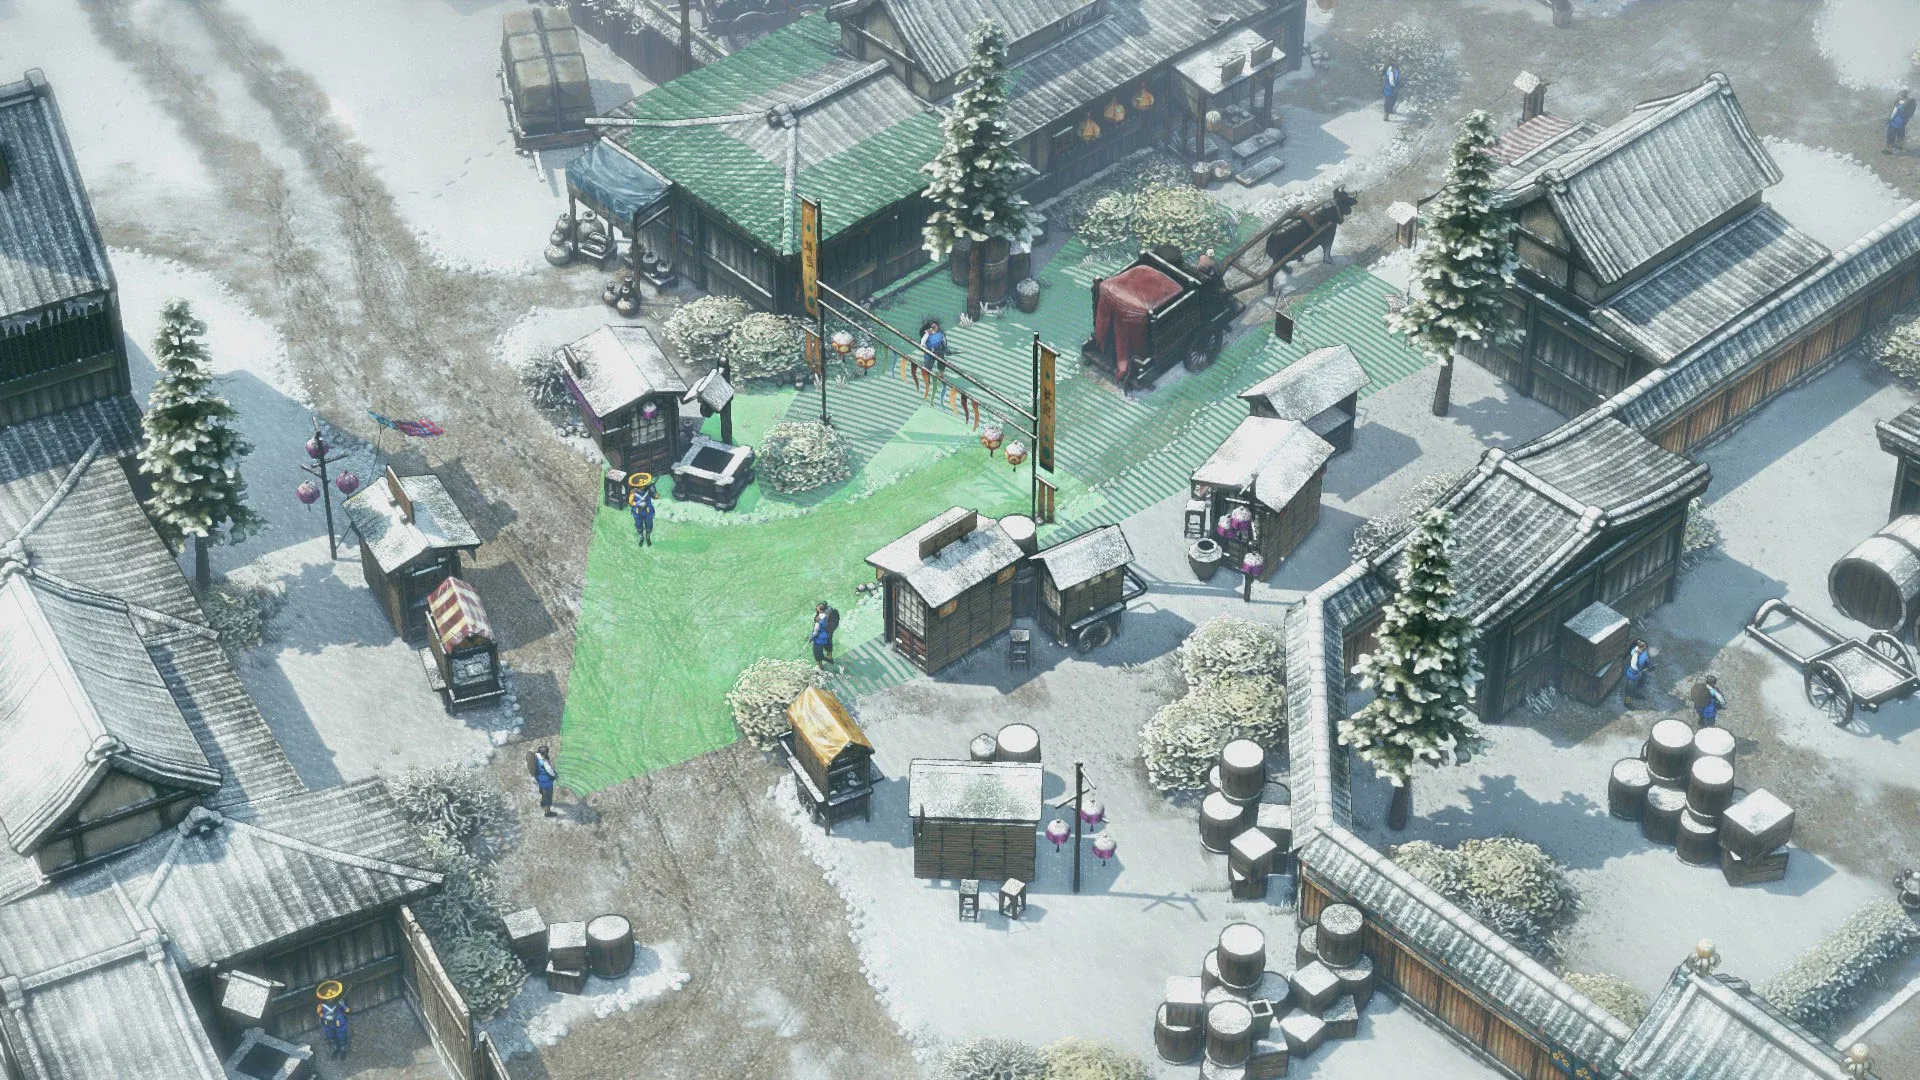 Imagem do jogo Shadow Tactics que mostra uma vila tranquila japonesa coberta por neve enquanto guardas realizam sua segurança e seu campo de visão é marcado em verde para o jogador